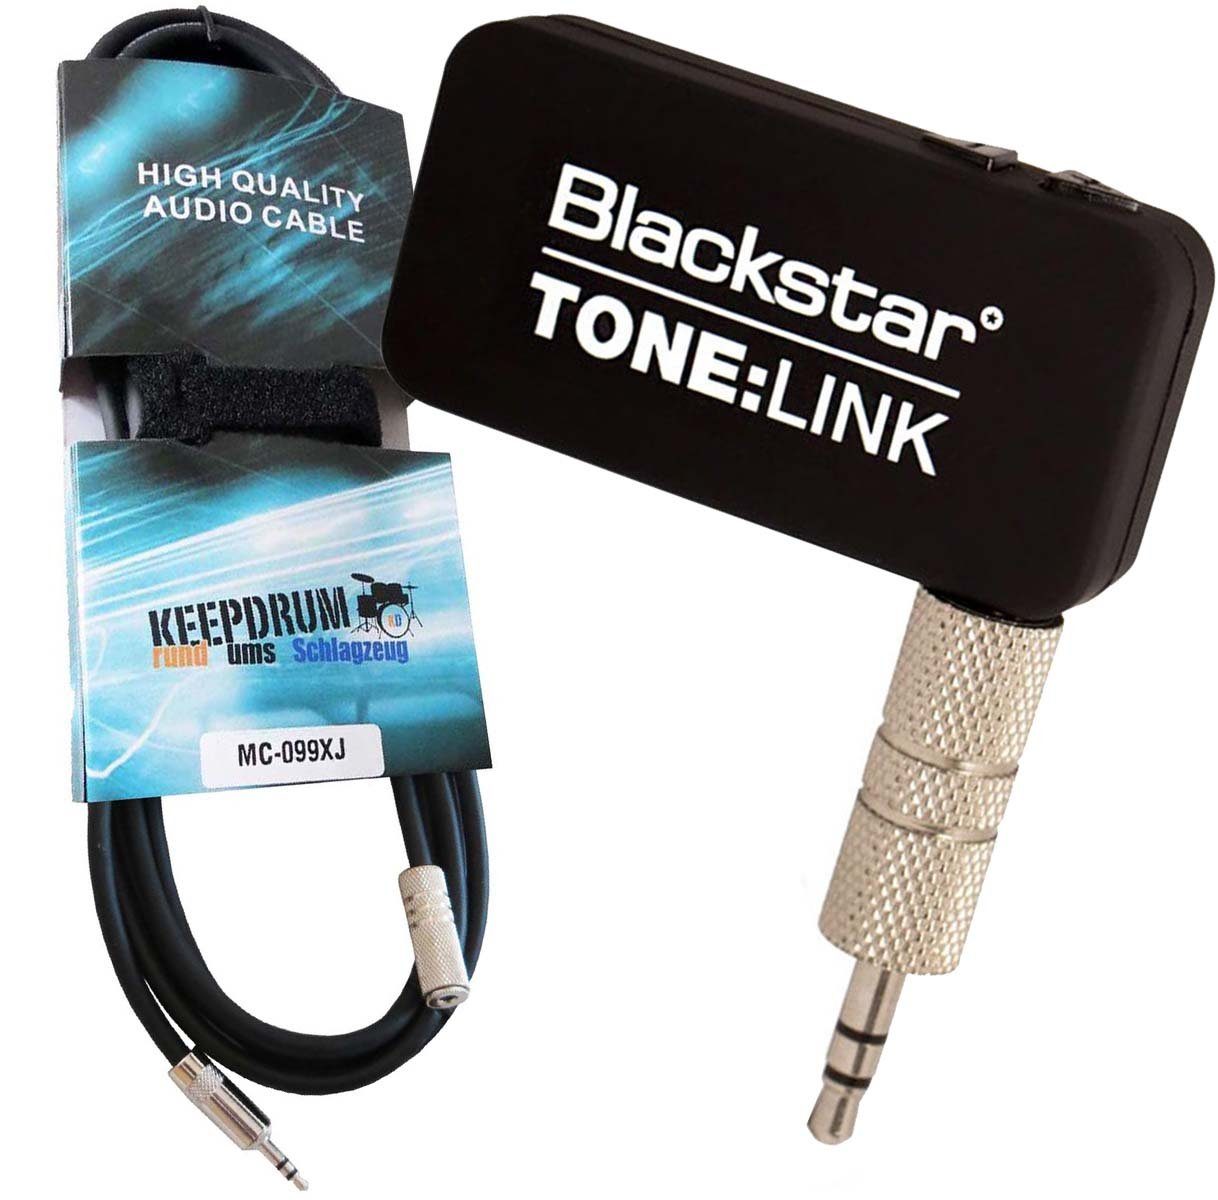 Blackstar Tone-Link Empfänger mit Kabel 1m Bluetooth-Adapter 3,5-mm-Klinke zu 3,5-mm-Klinke, Reichweite 20m